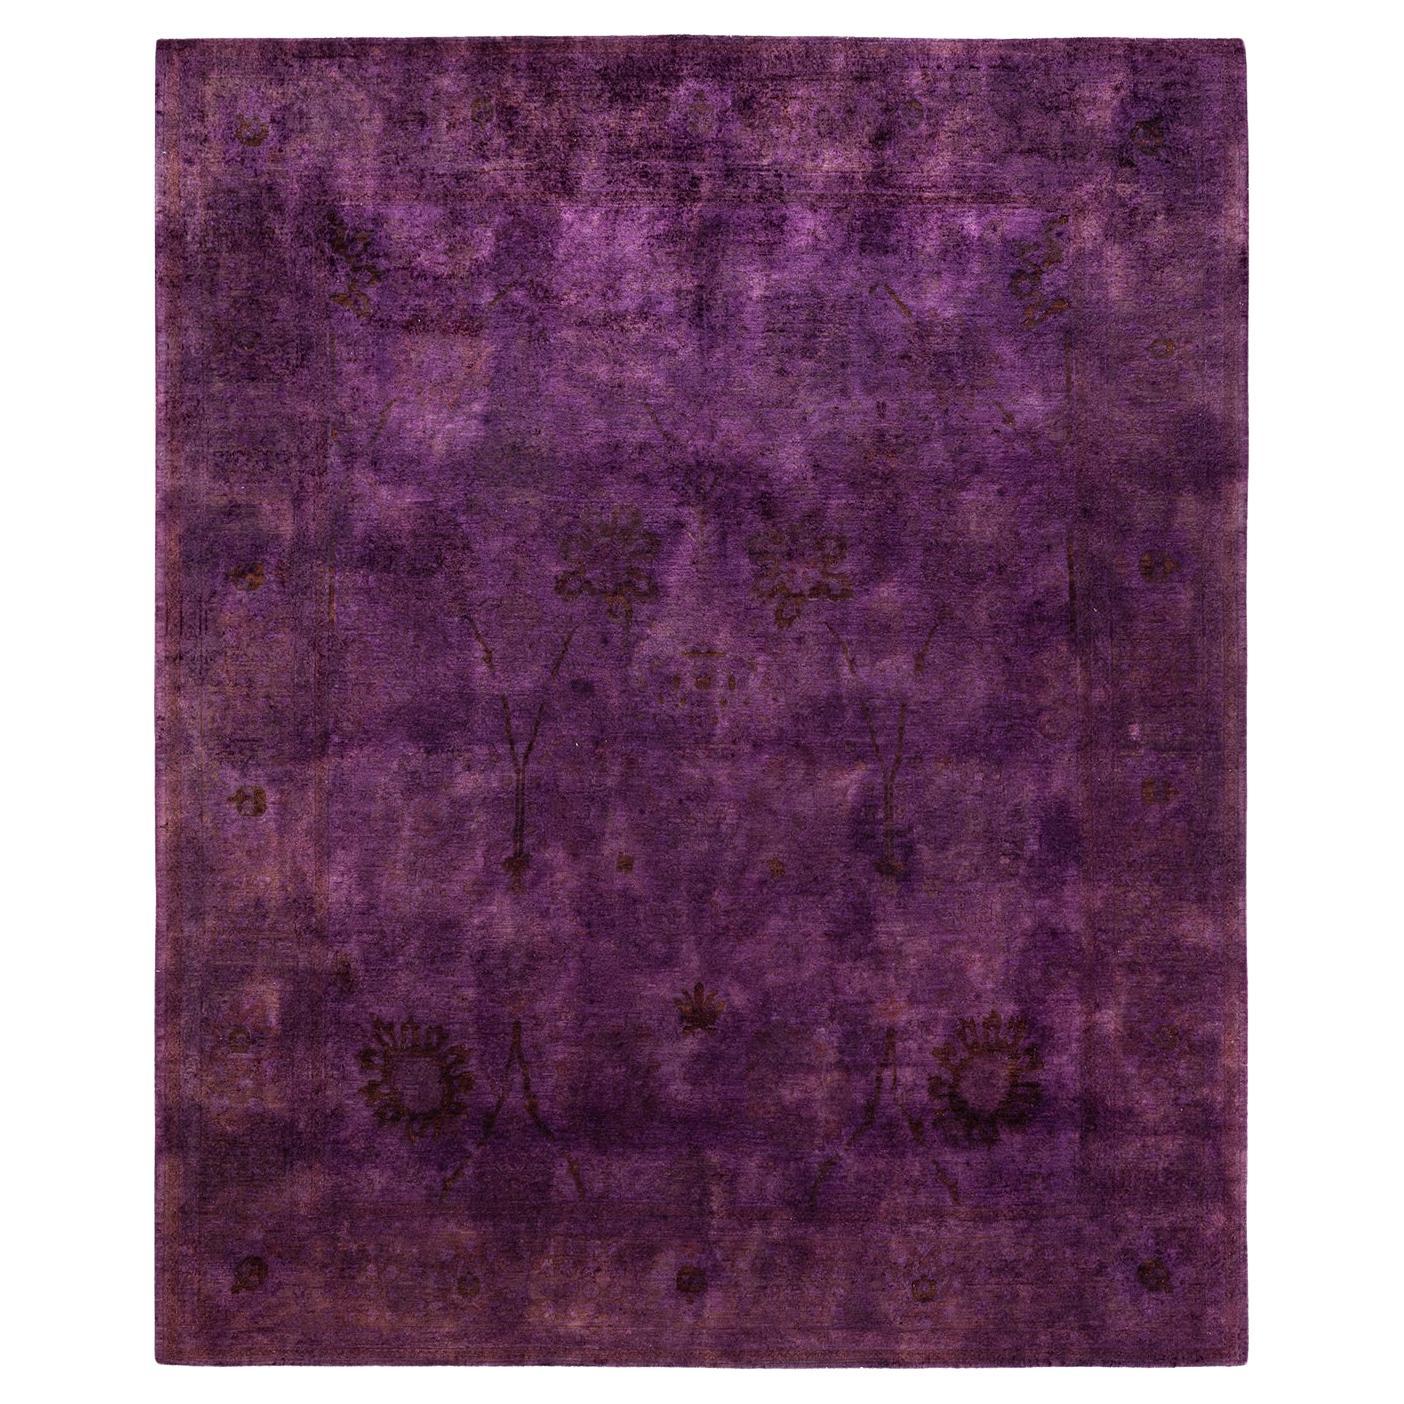 Tappeto per l'area Vibrance Purple unico nel suo genere, annodato a mano e sovratinto